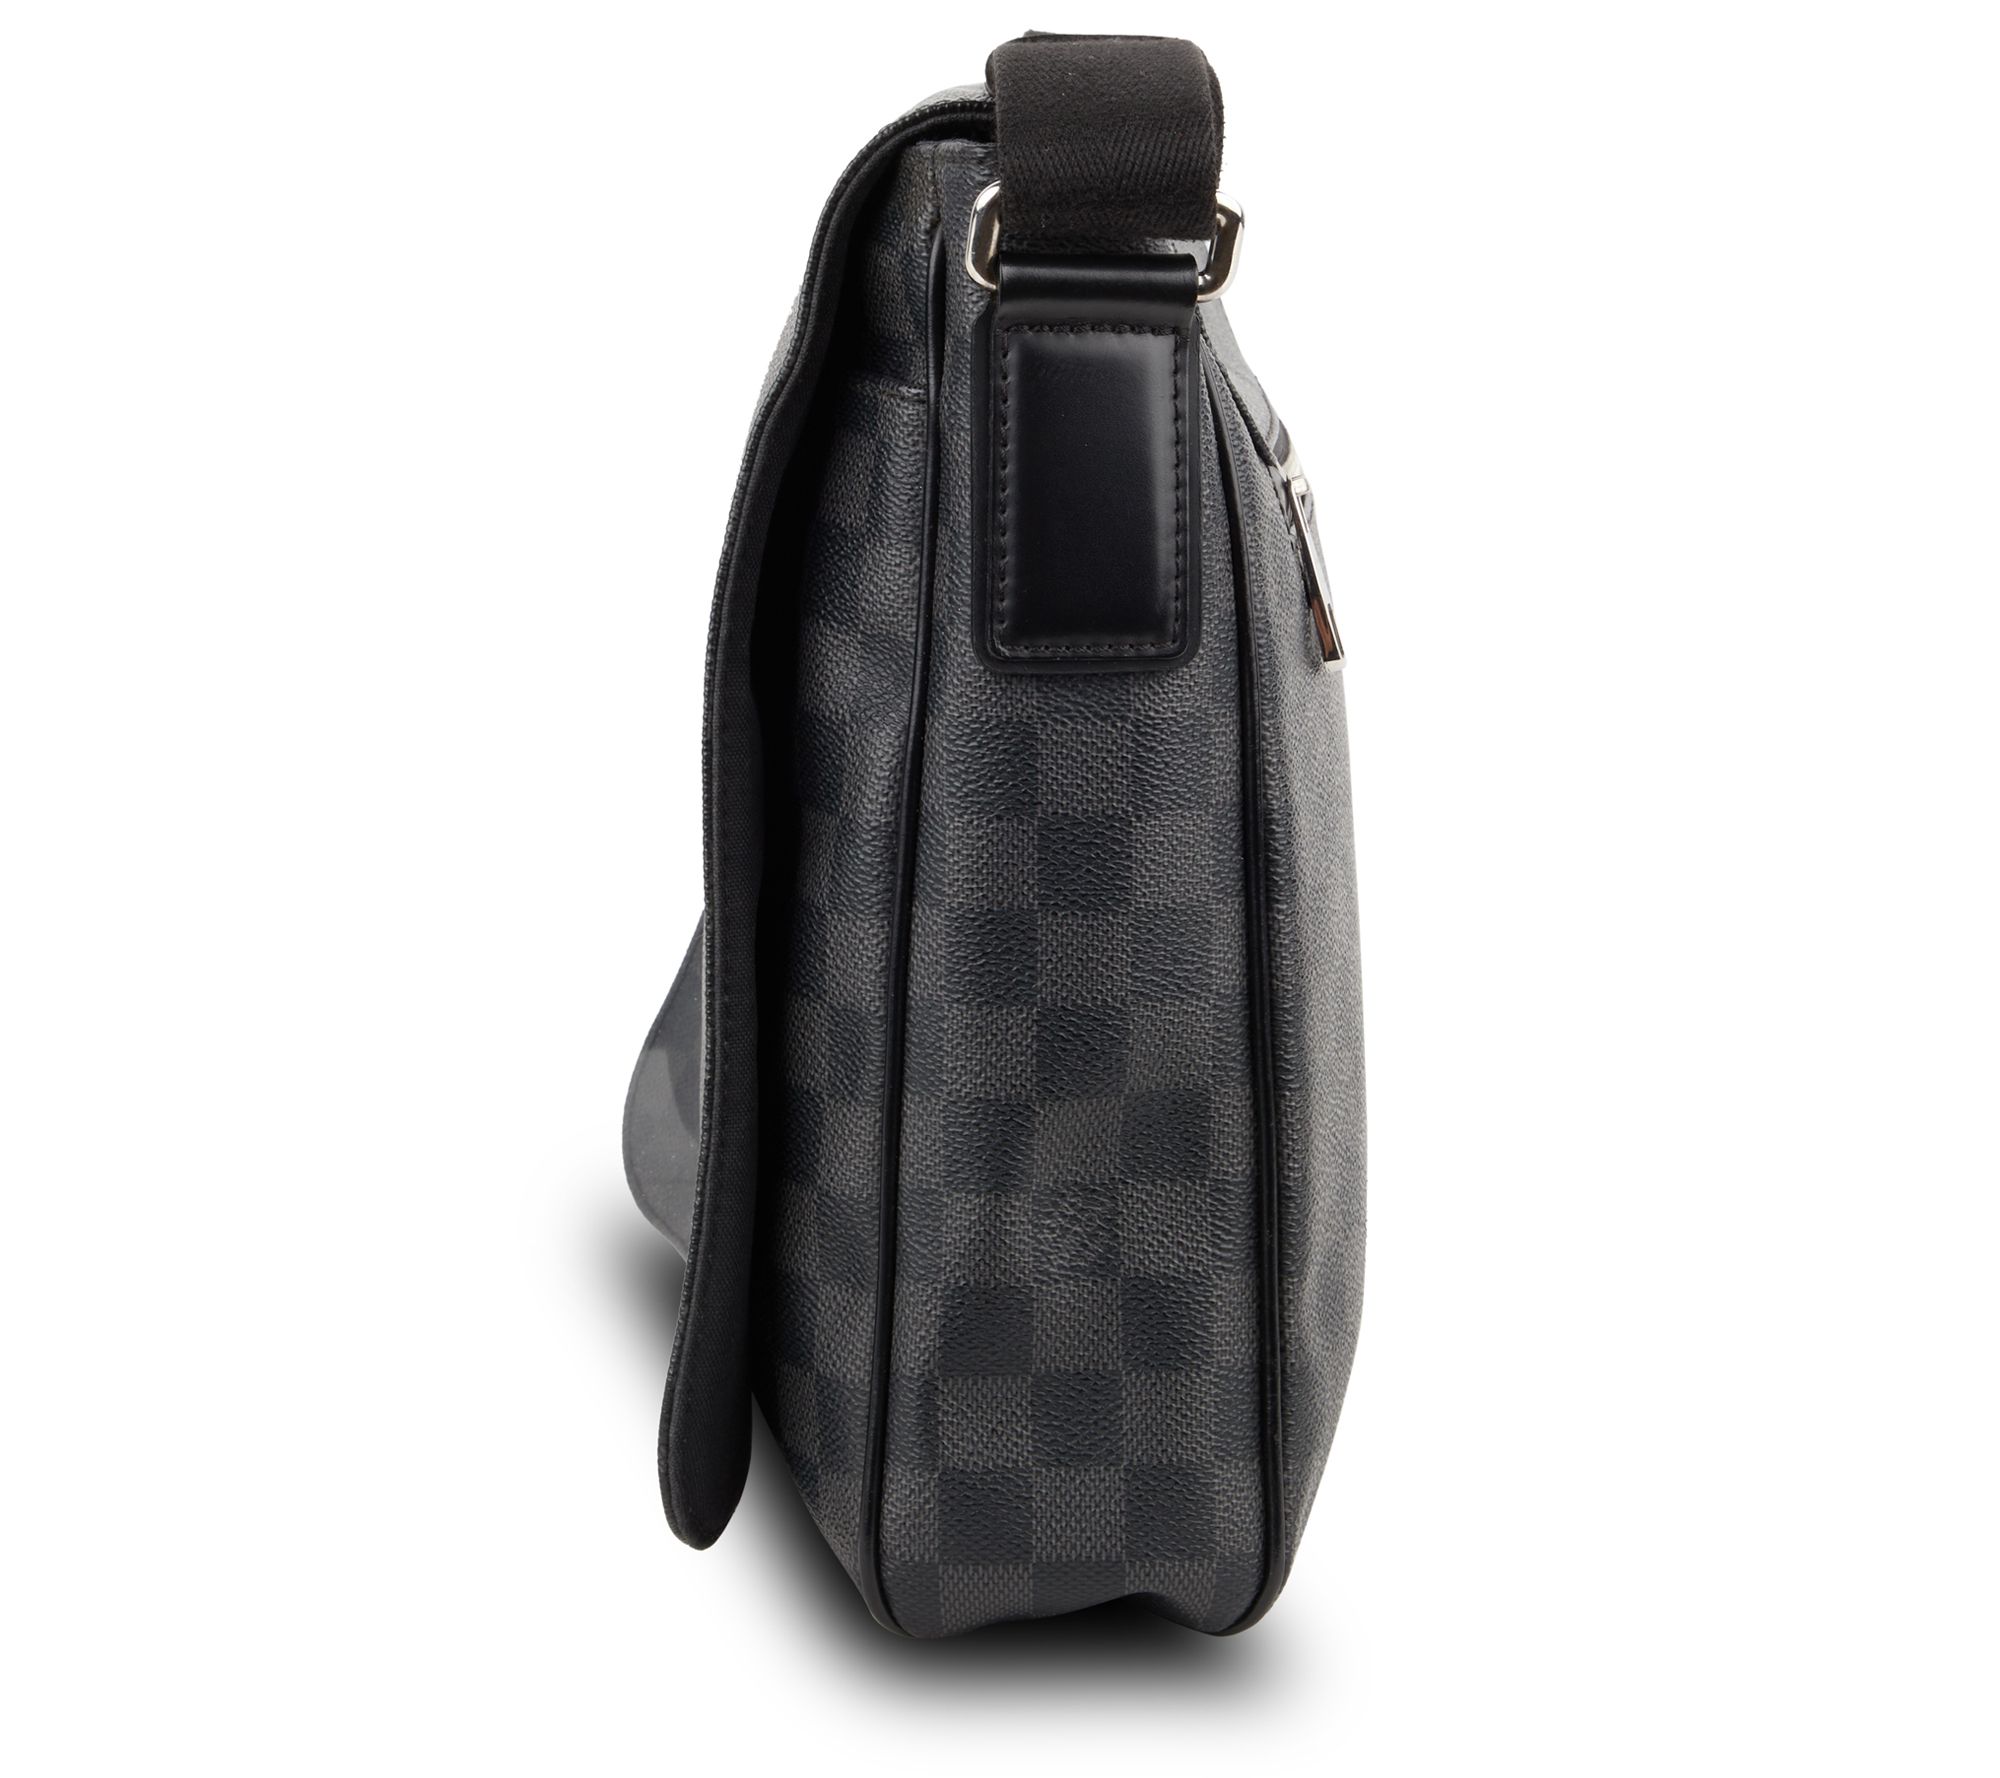 Louis Vuitton, Bags, Authentic Louis Vuitton Damier Graphite Messenger Mm  Practical Luxurious